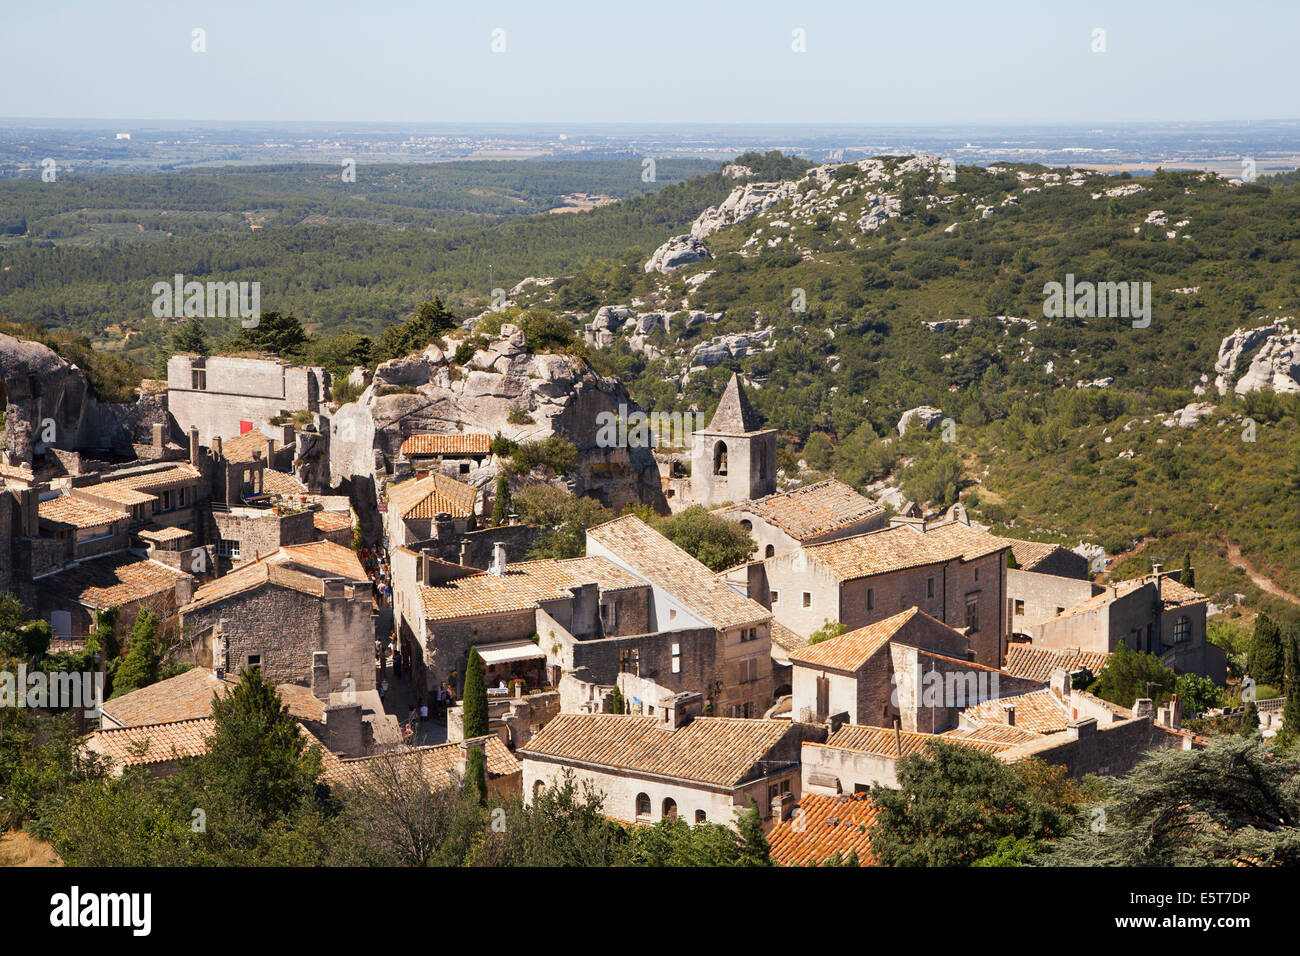 Medieval village of Les Baux de Provence, France. Stock Photo